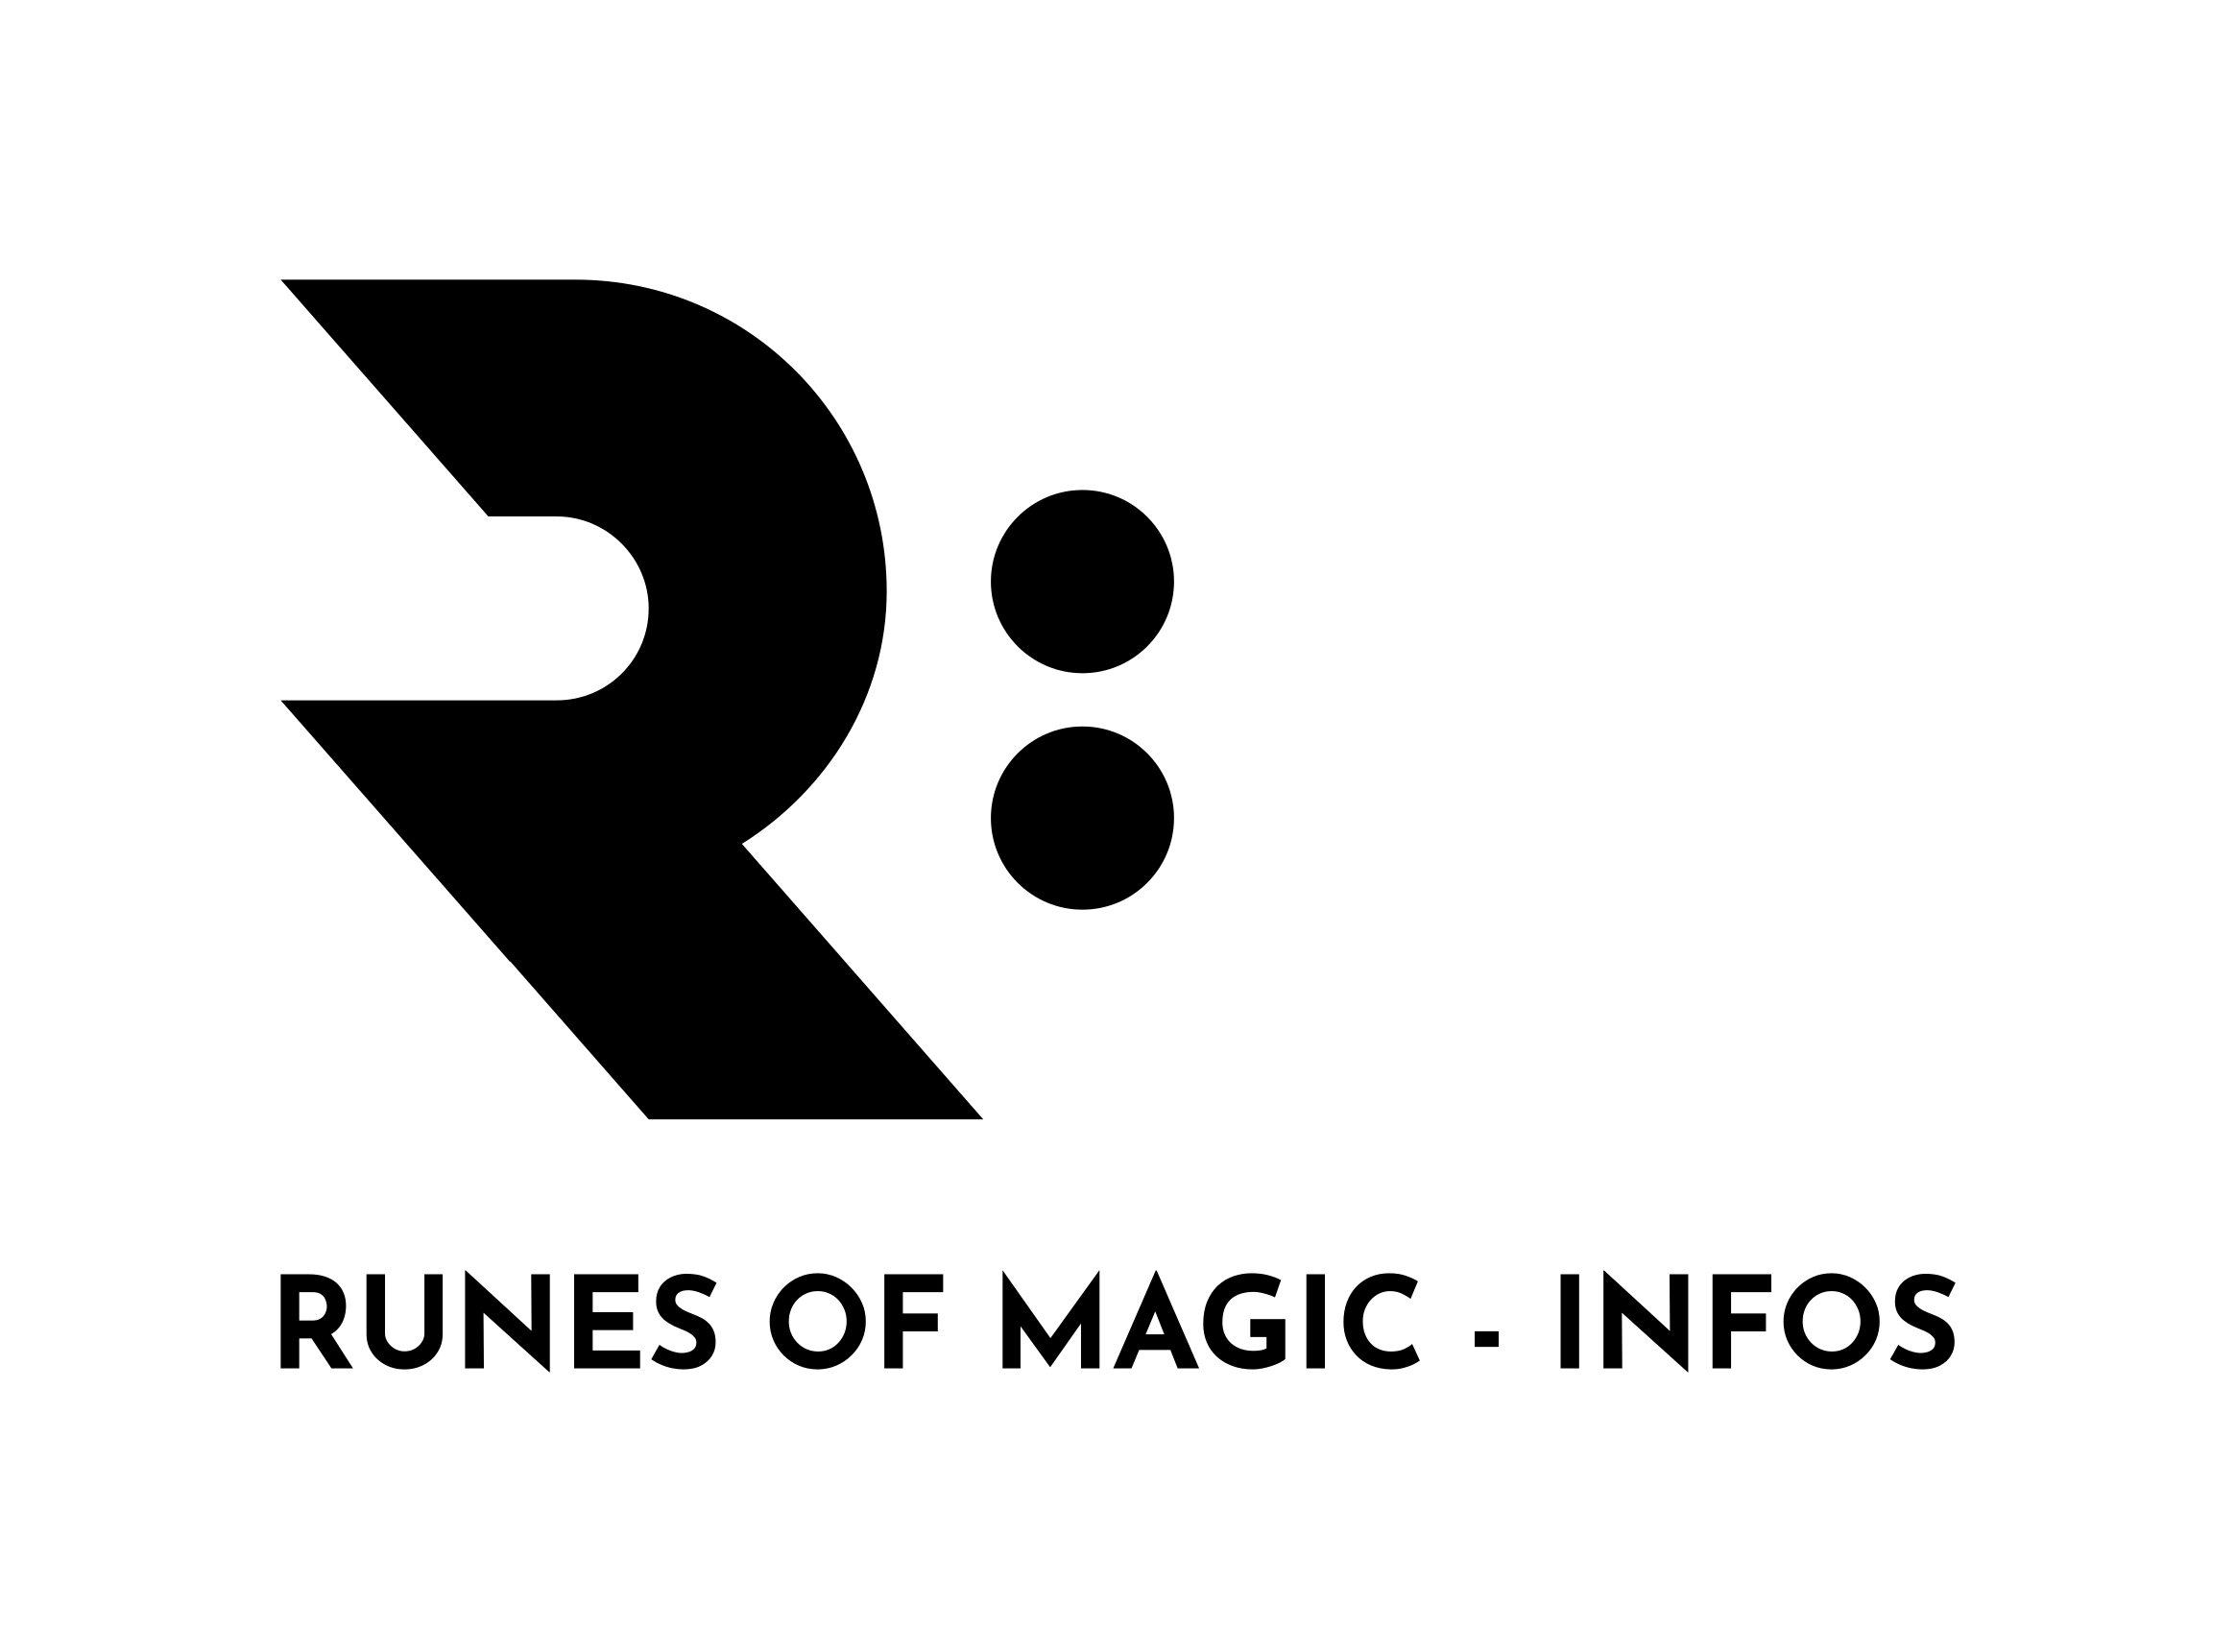 Runes of Magic - Infos